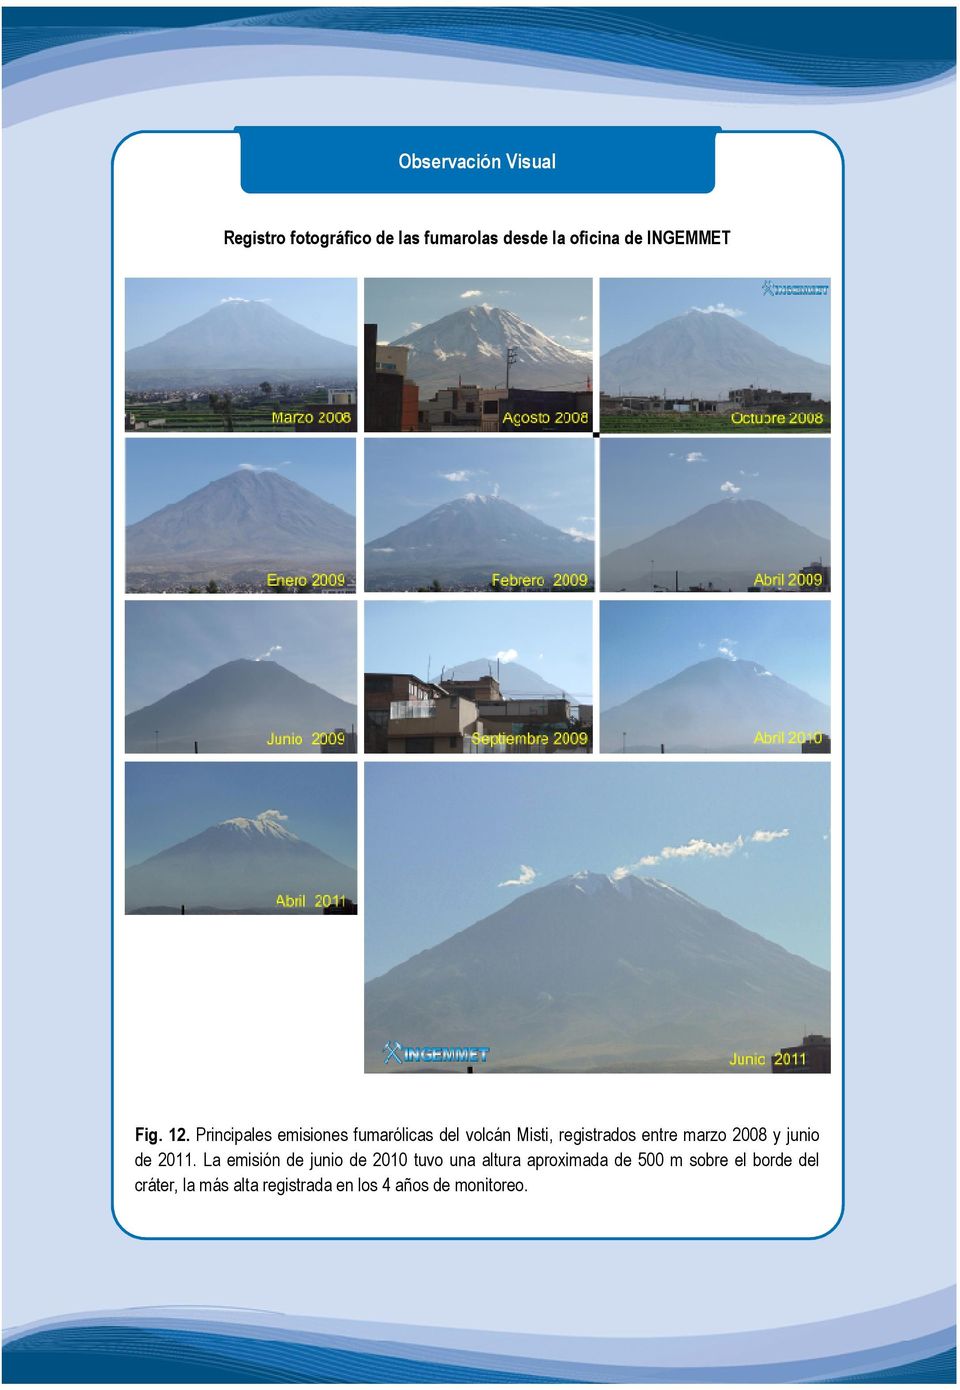 Principales emisiones fumarólicas del volcán Misti, registrados entre marzo 2008 y